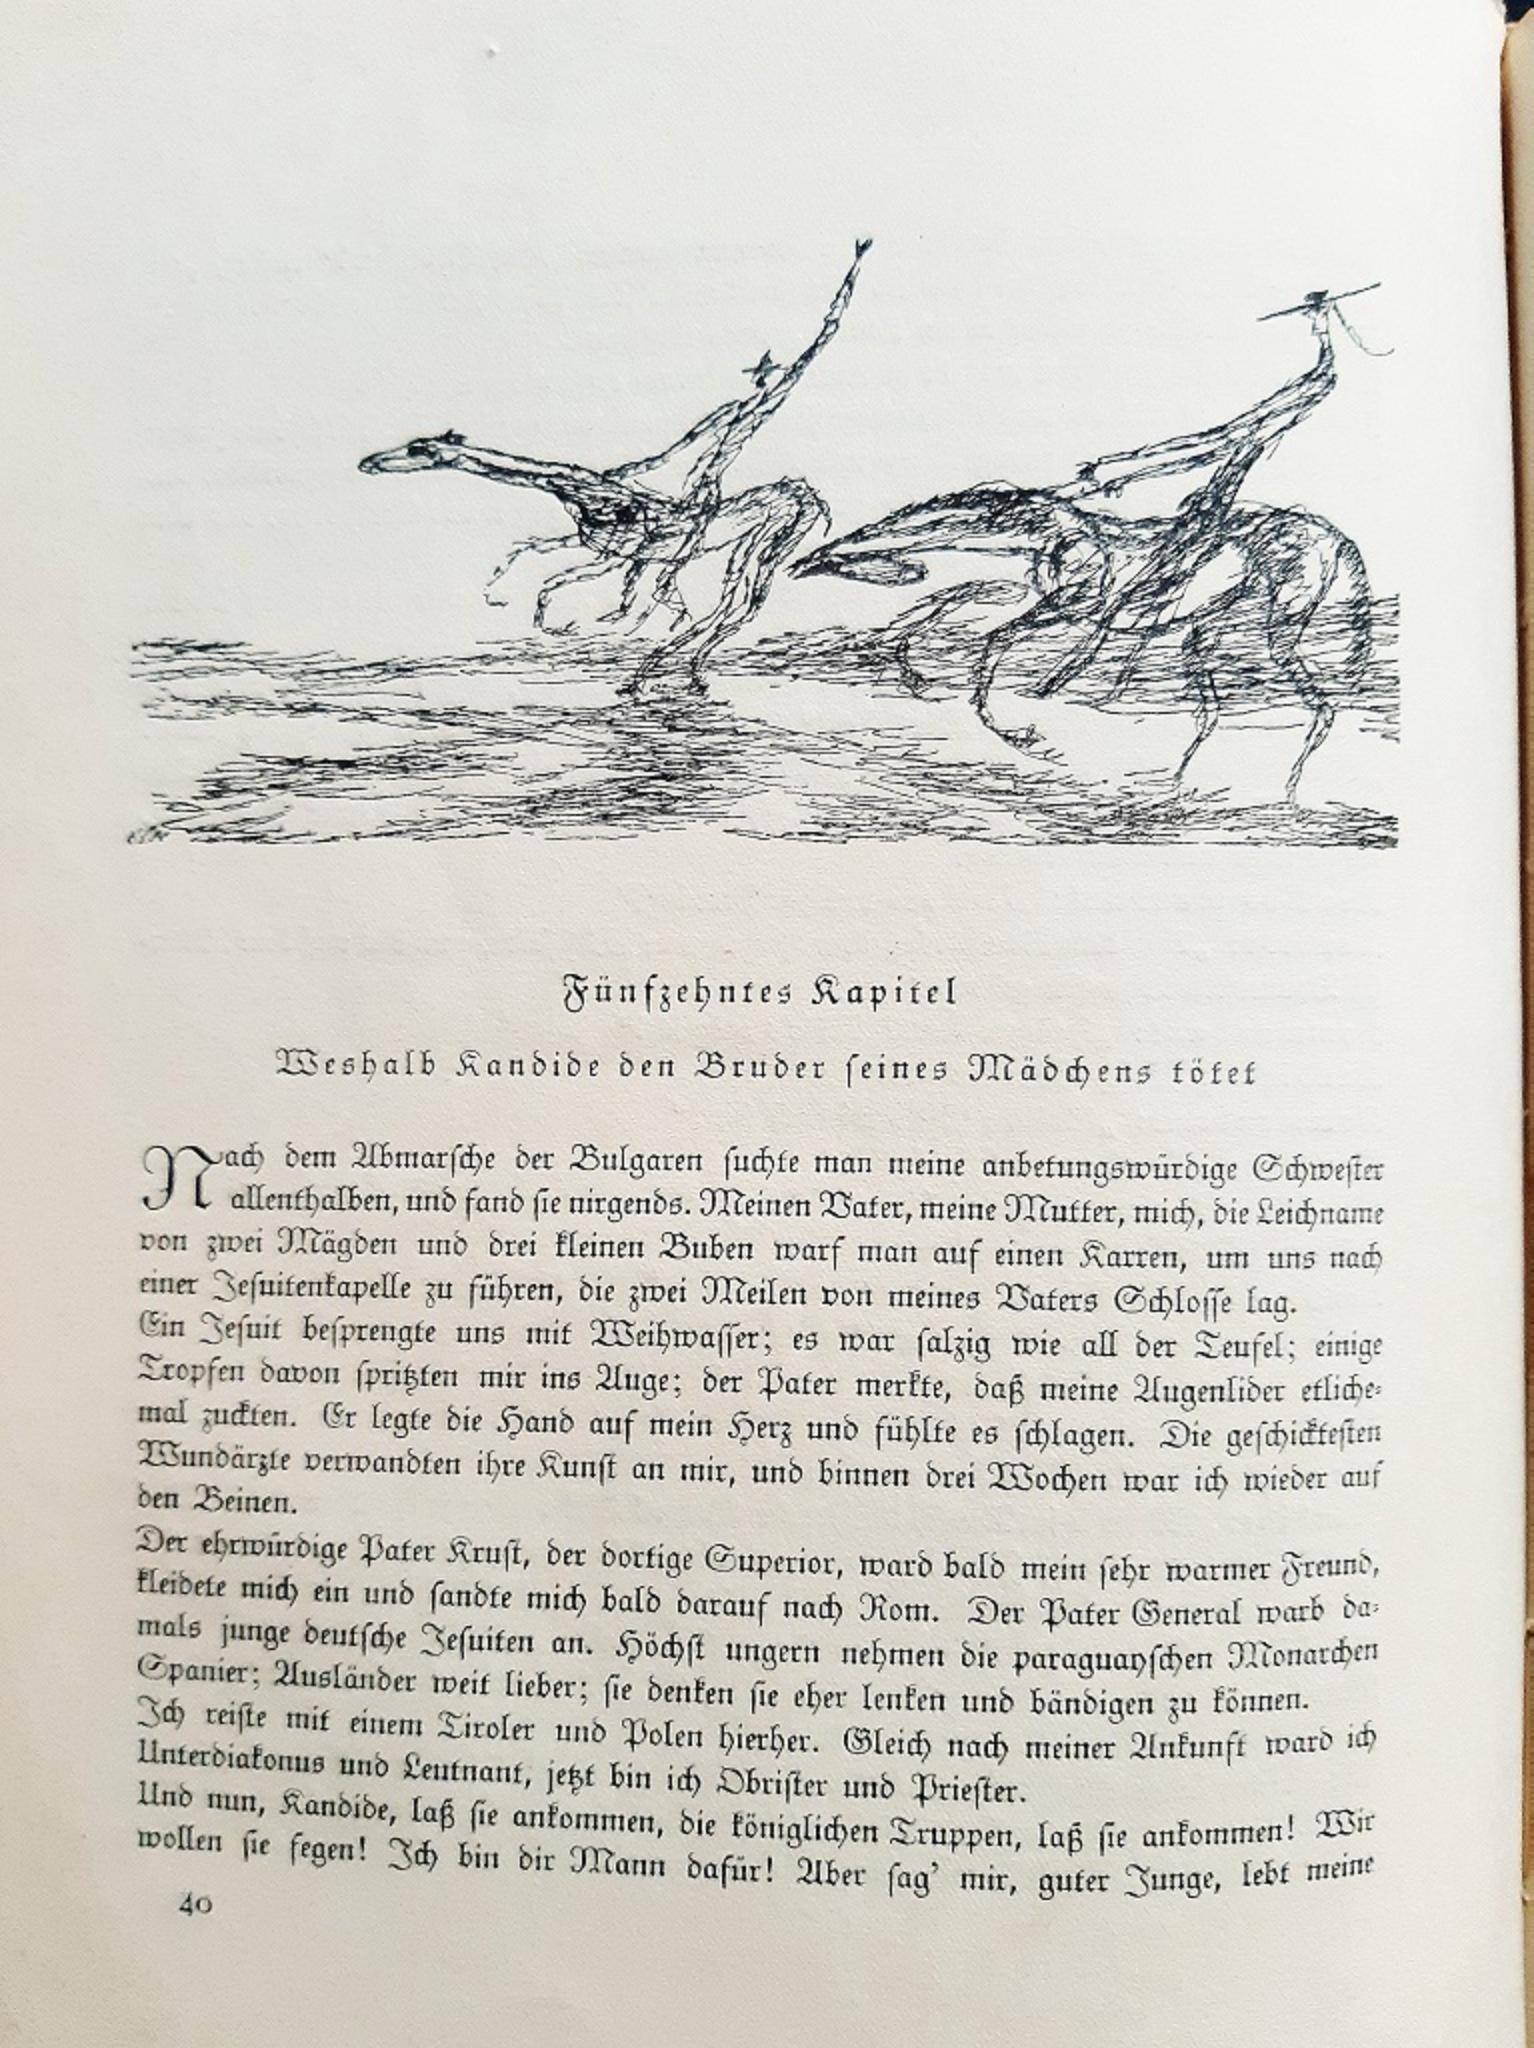 Kandide oder die beste Welt - Vintage Rare Book Illustrated by Paul Klee - 1920 For Sale 2